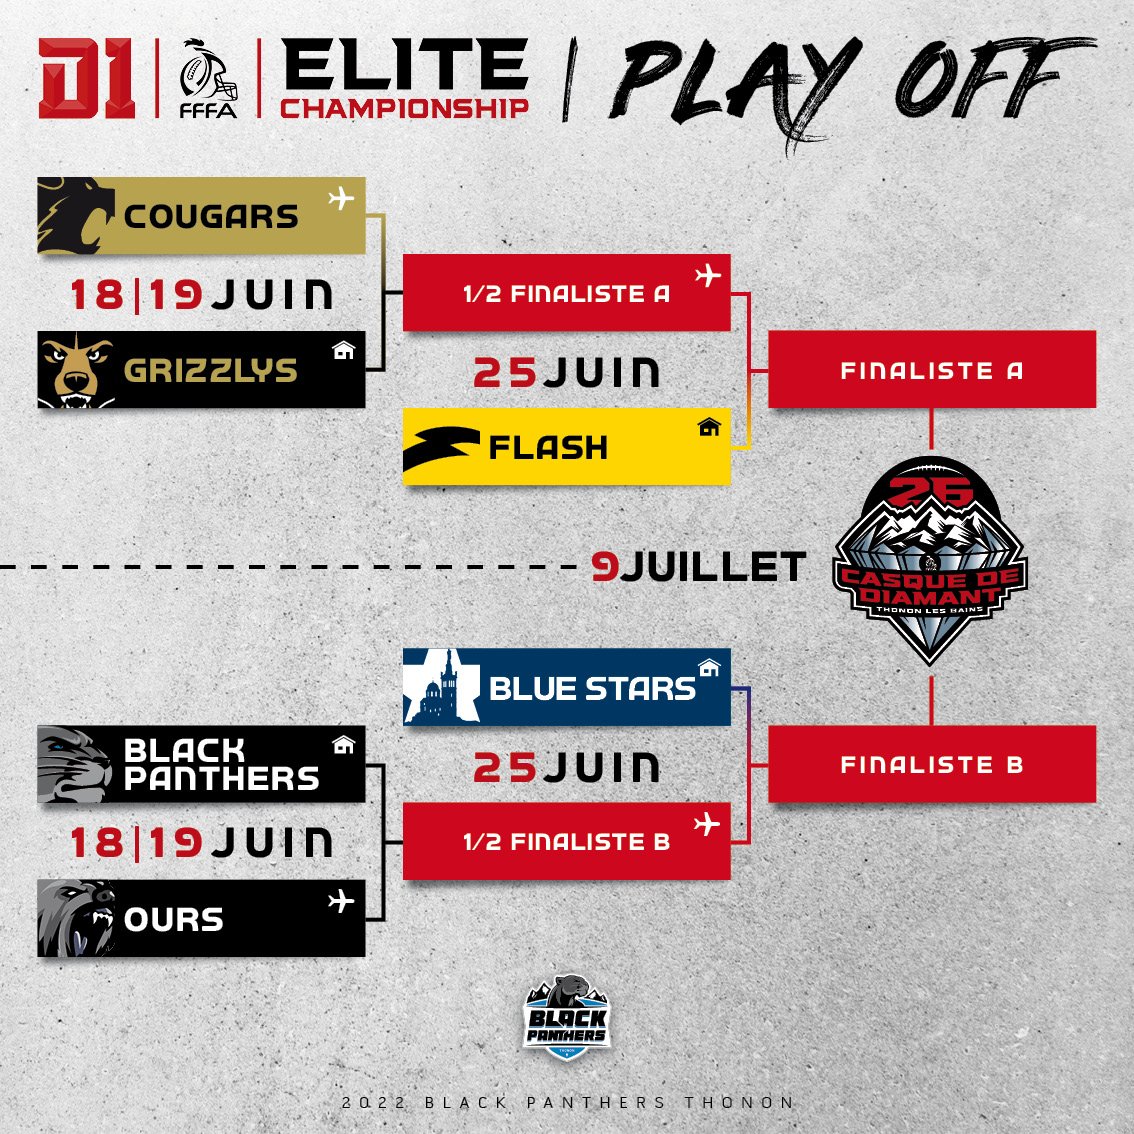 Championnat Elite : le programme des playoffs (THE FREE AGENT)